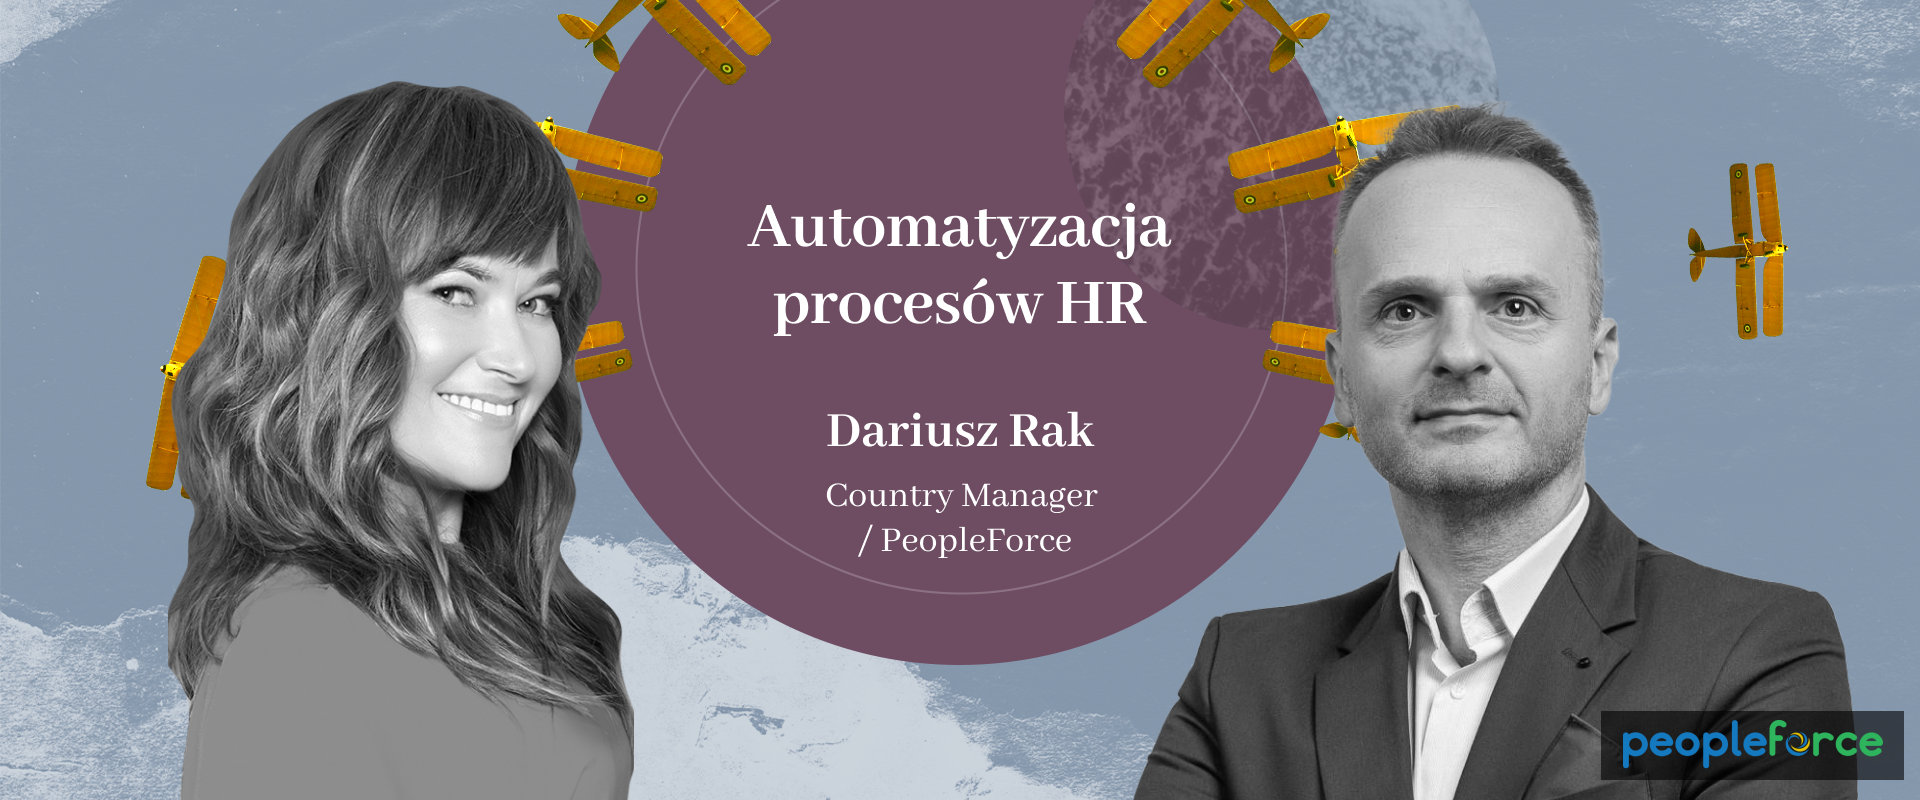 Automatyzacja procesów HR